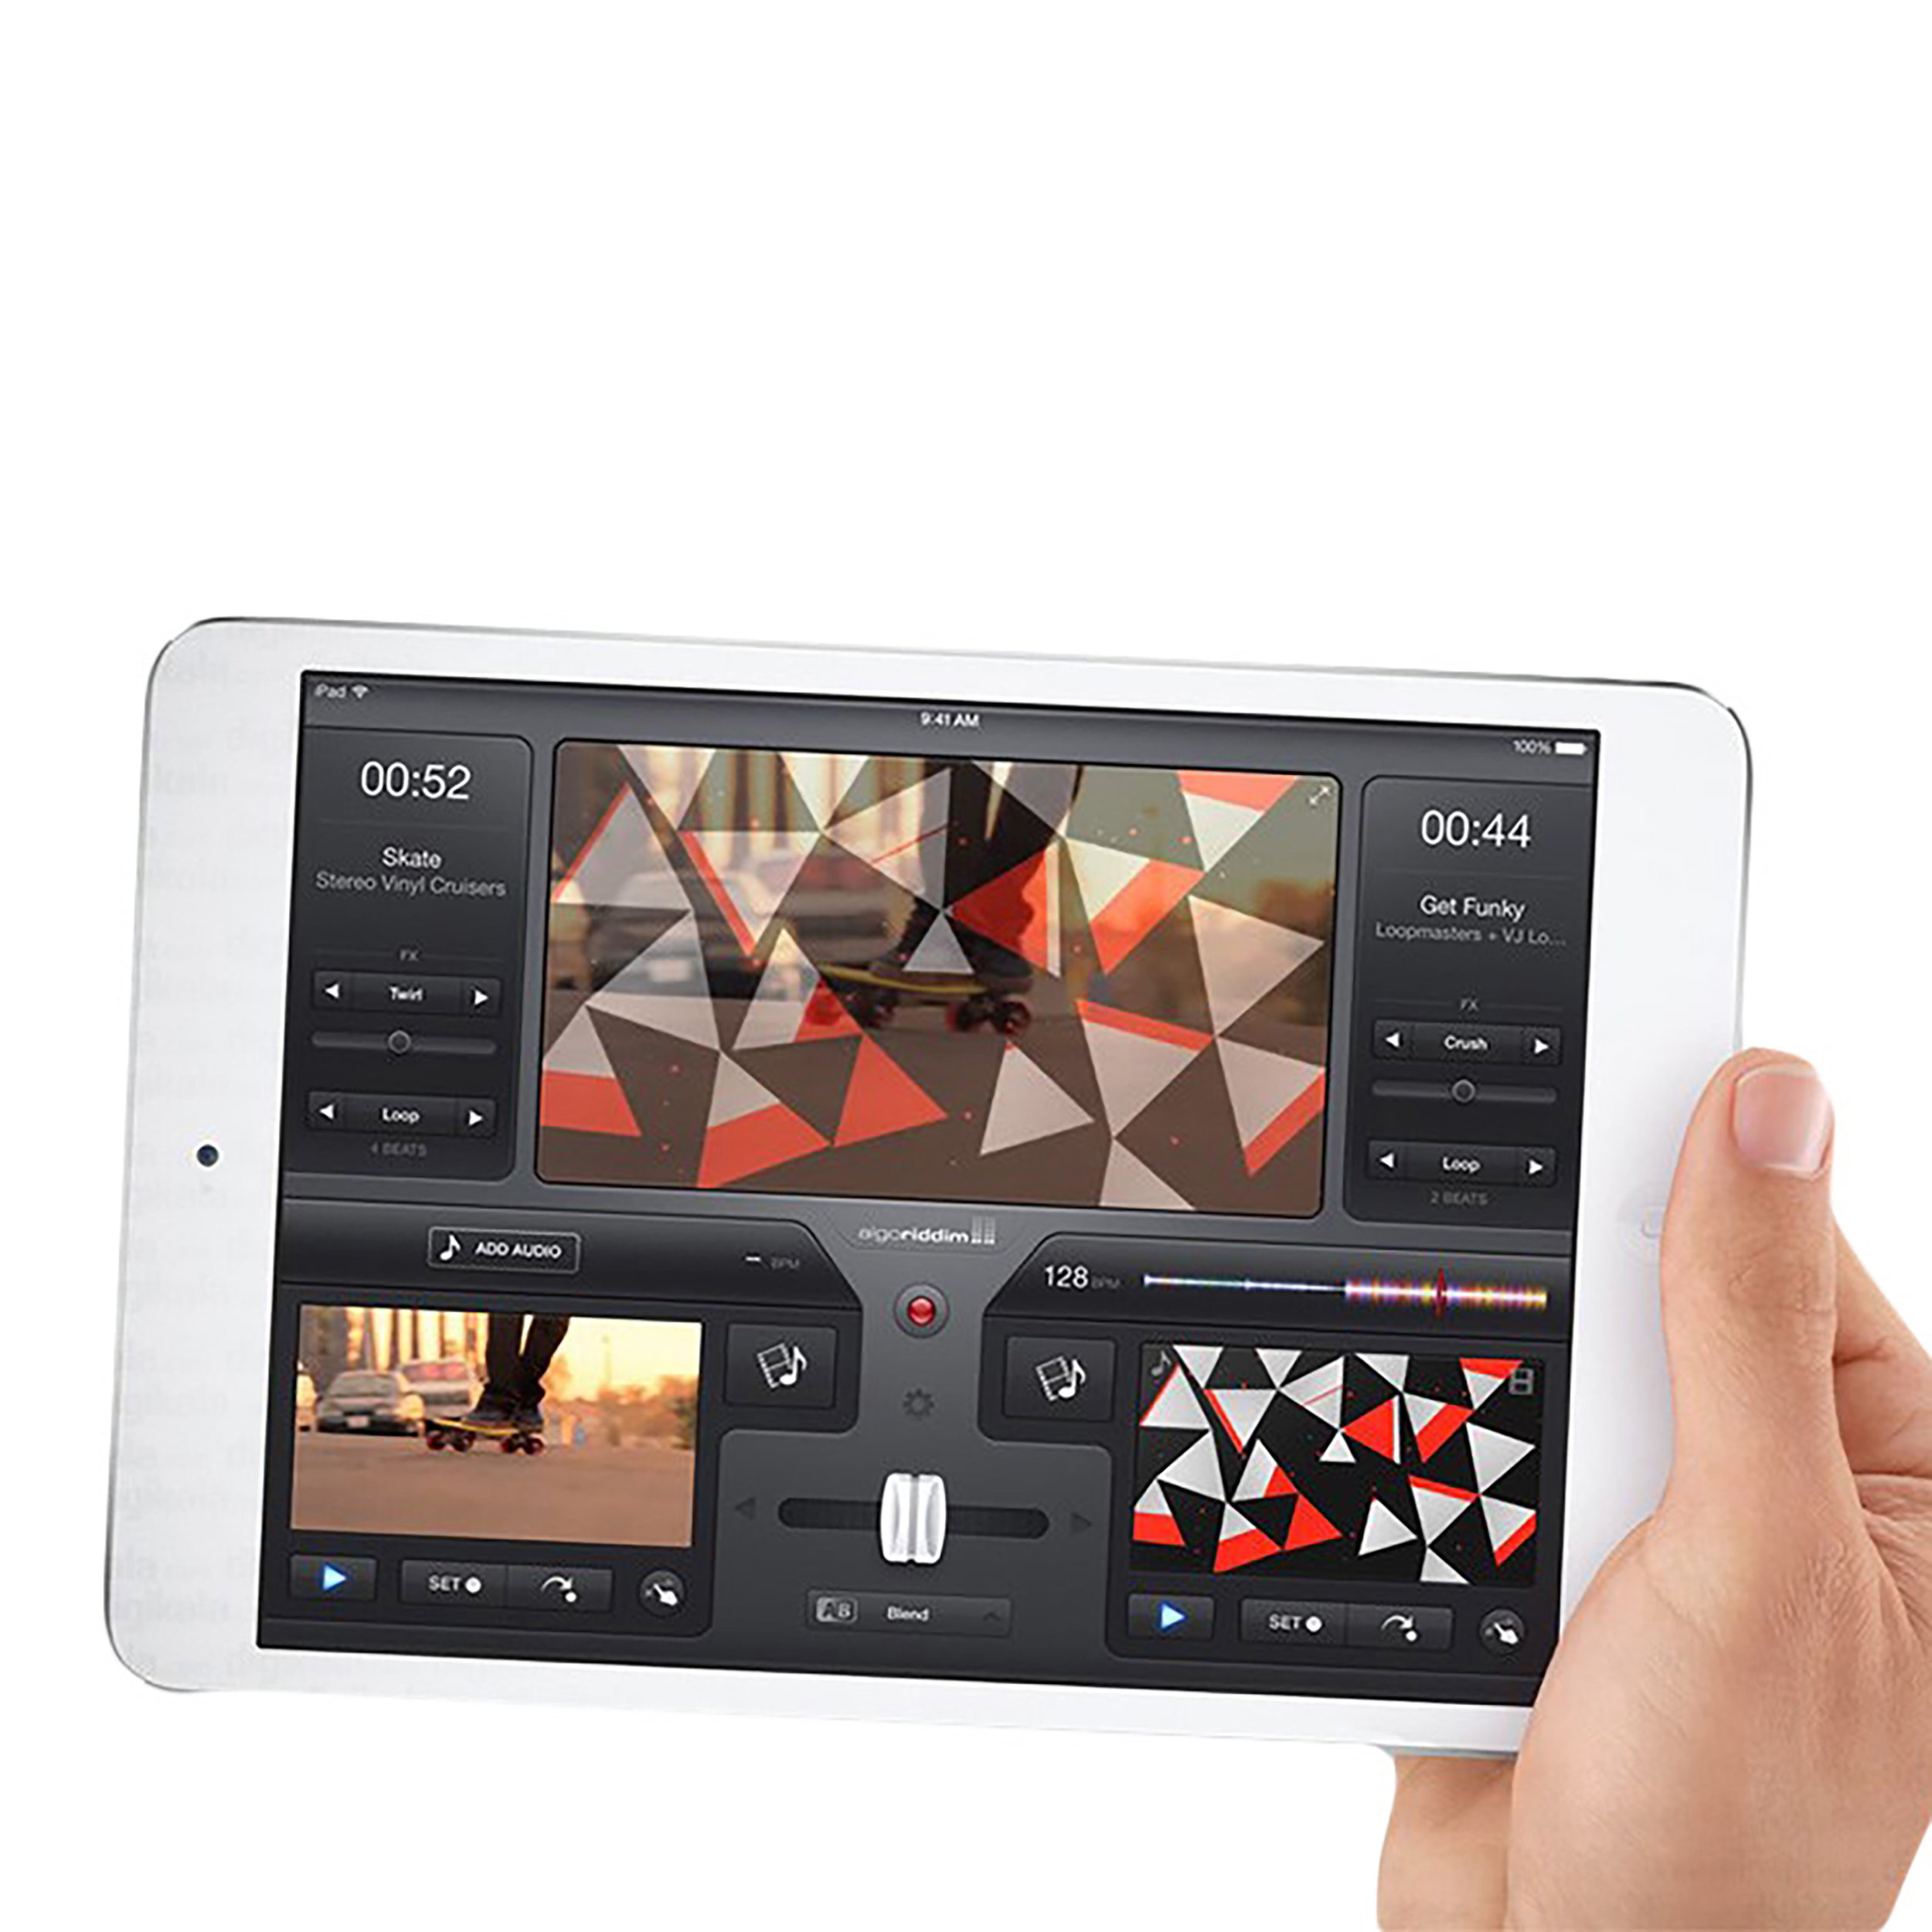 تبلت اپل مدل iPad mini 2 Wi-Fi با صفحه نمایش رتینا ظرفیت 64 گیگابایت